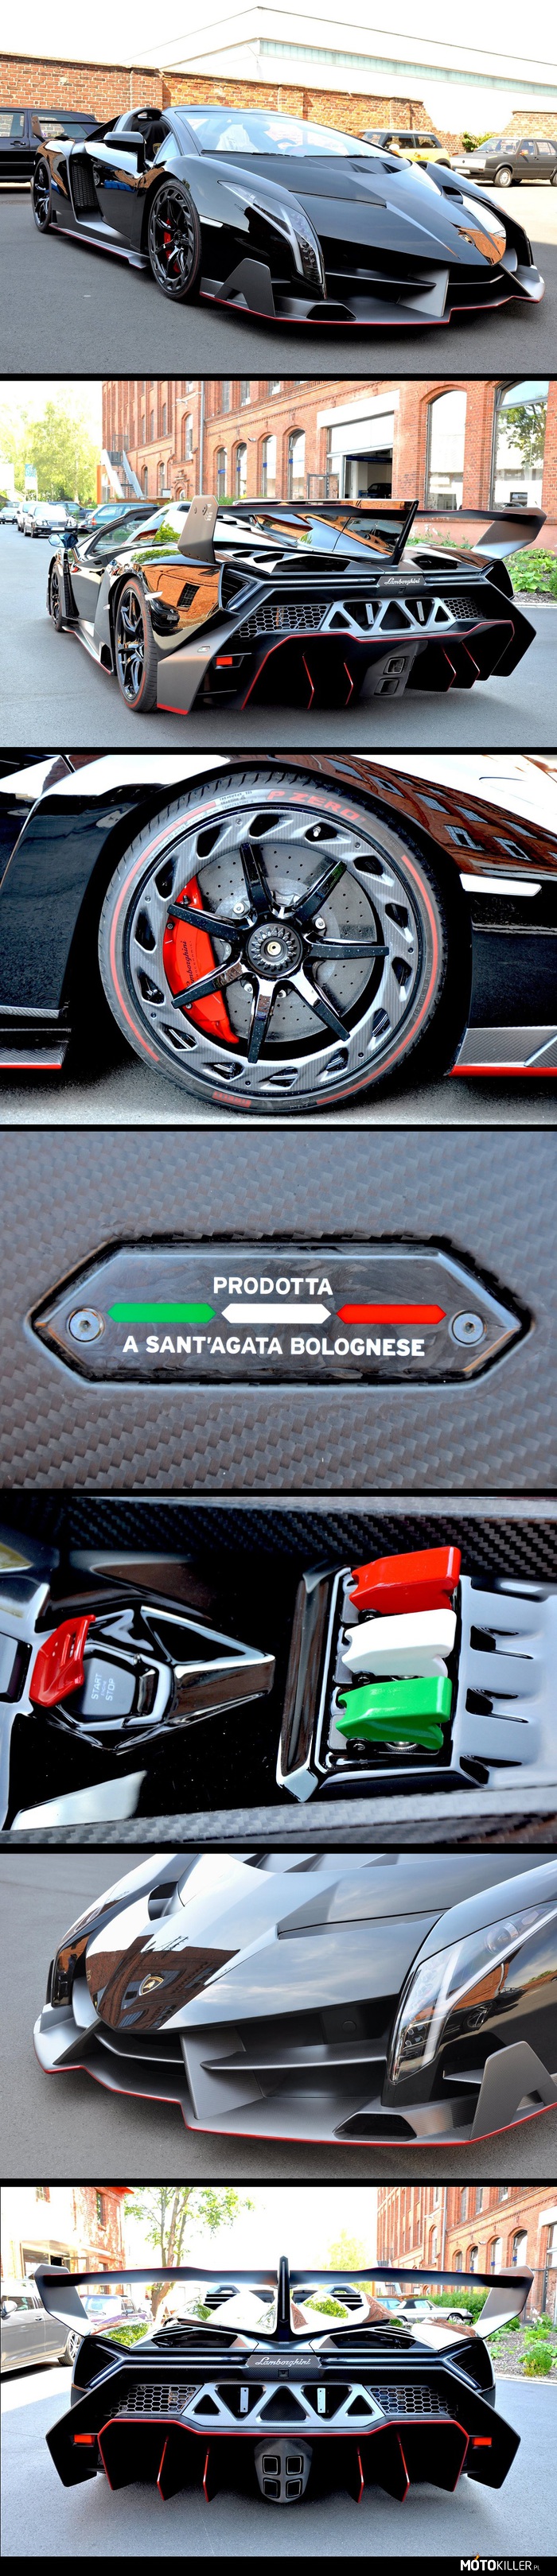 Lamborghini Veneno Roadster – 9 egzemplarzy i ten na zdjęciach jest pierwszym, który dotarł do swojego właściciela.
Piękność to jest kwestia gustu, ale chyba wszyscy się zgodzą, że wygląda kosmicznie. 